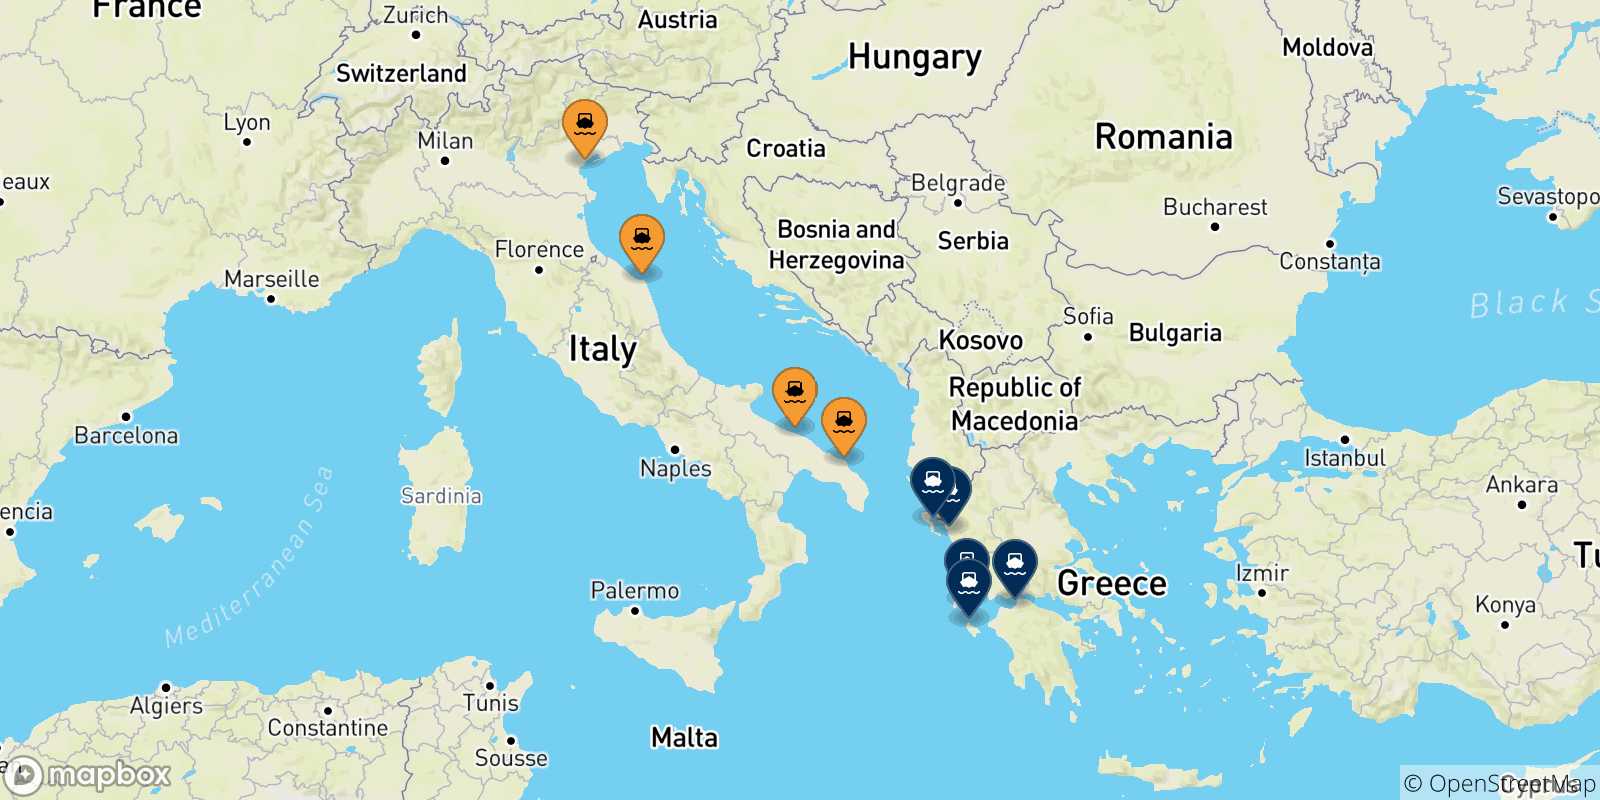 Mappa delle possibili rotte tra l'Italia e la Grecia